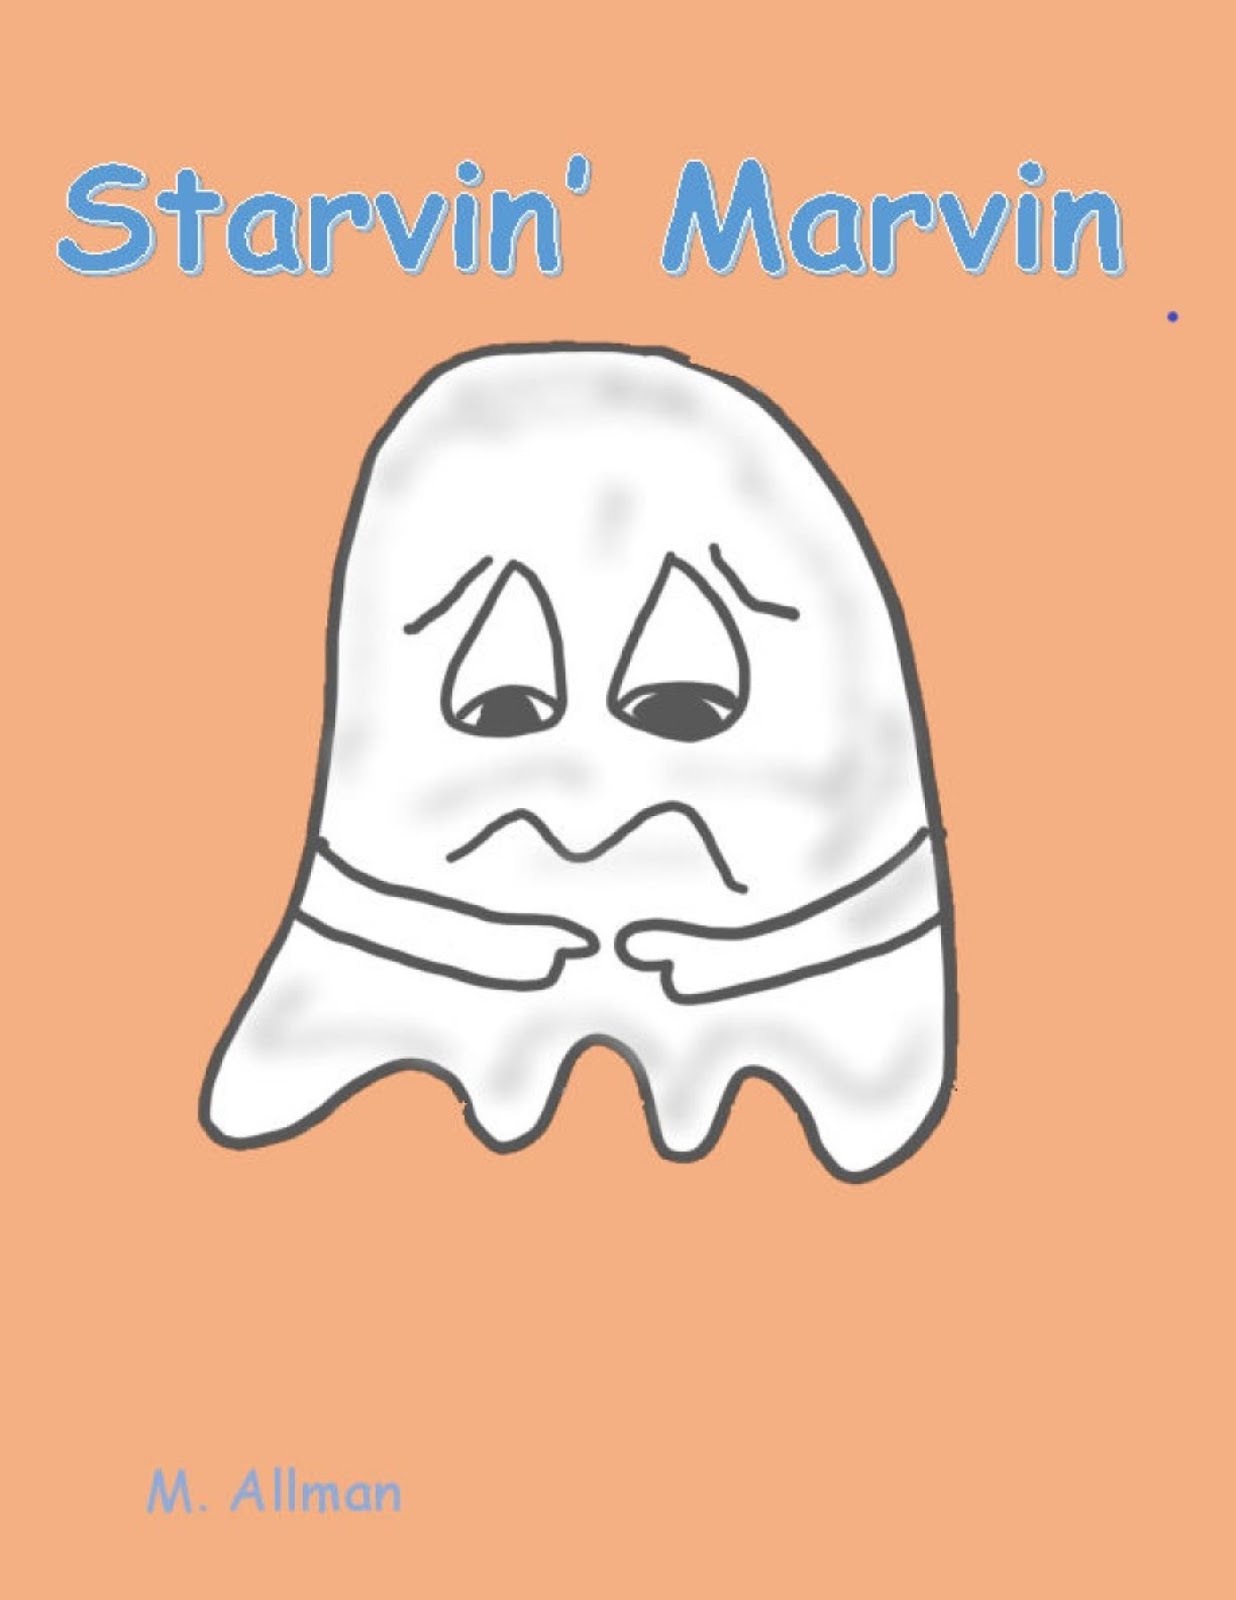 Starvin' Marvin